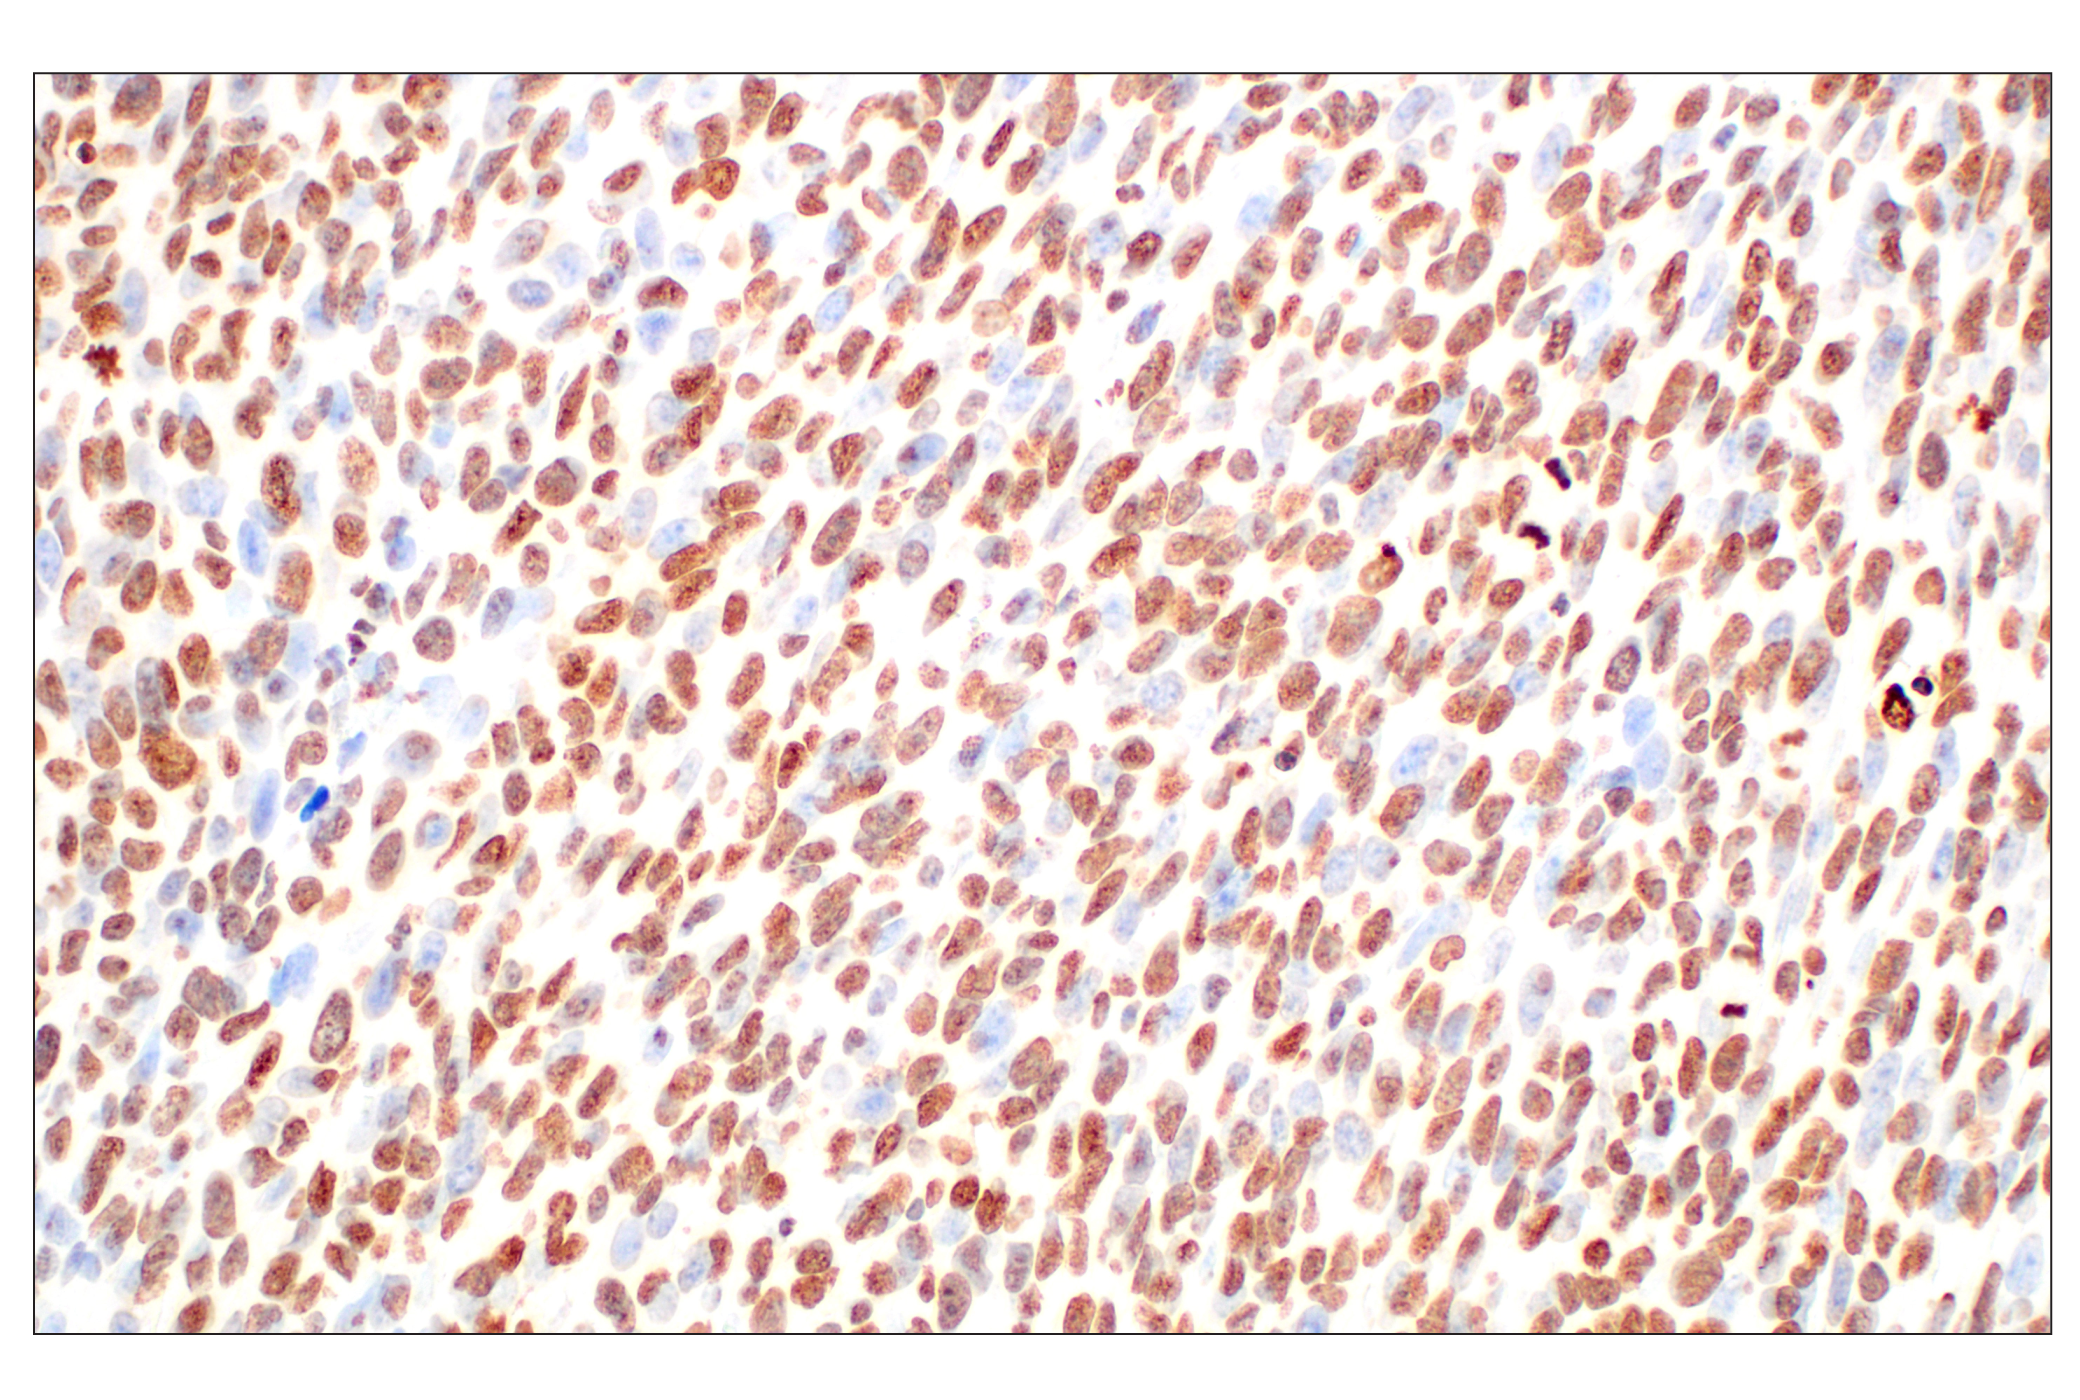  Image 9: Methyl-Histone H3 (Lys27) Antibody Sampler Kit